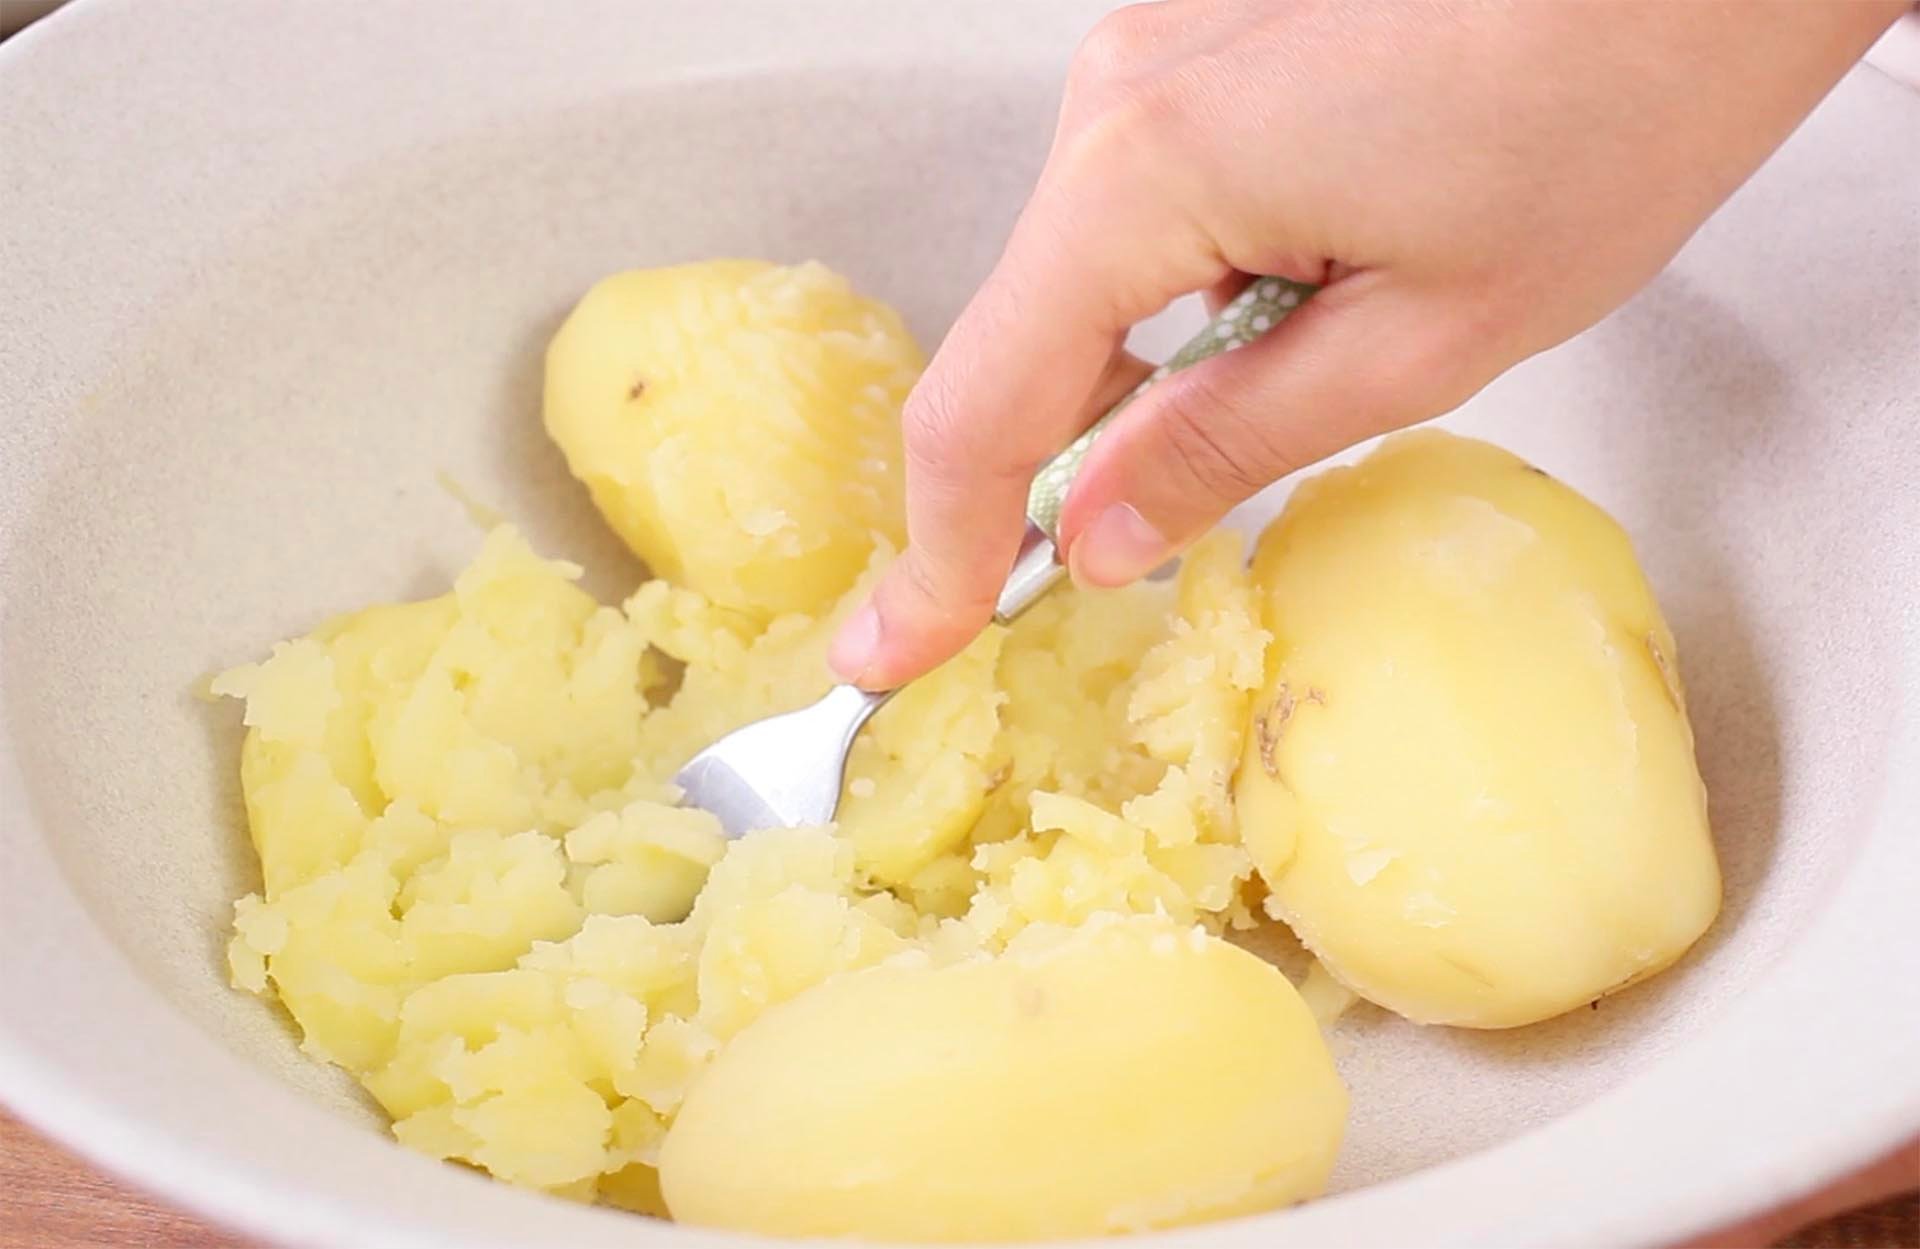 Cotolette di patate ripiene filanti - Step 1